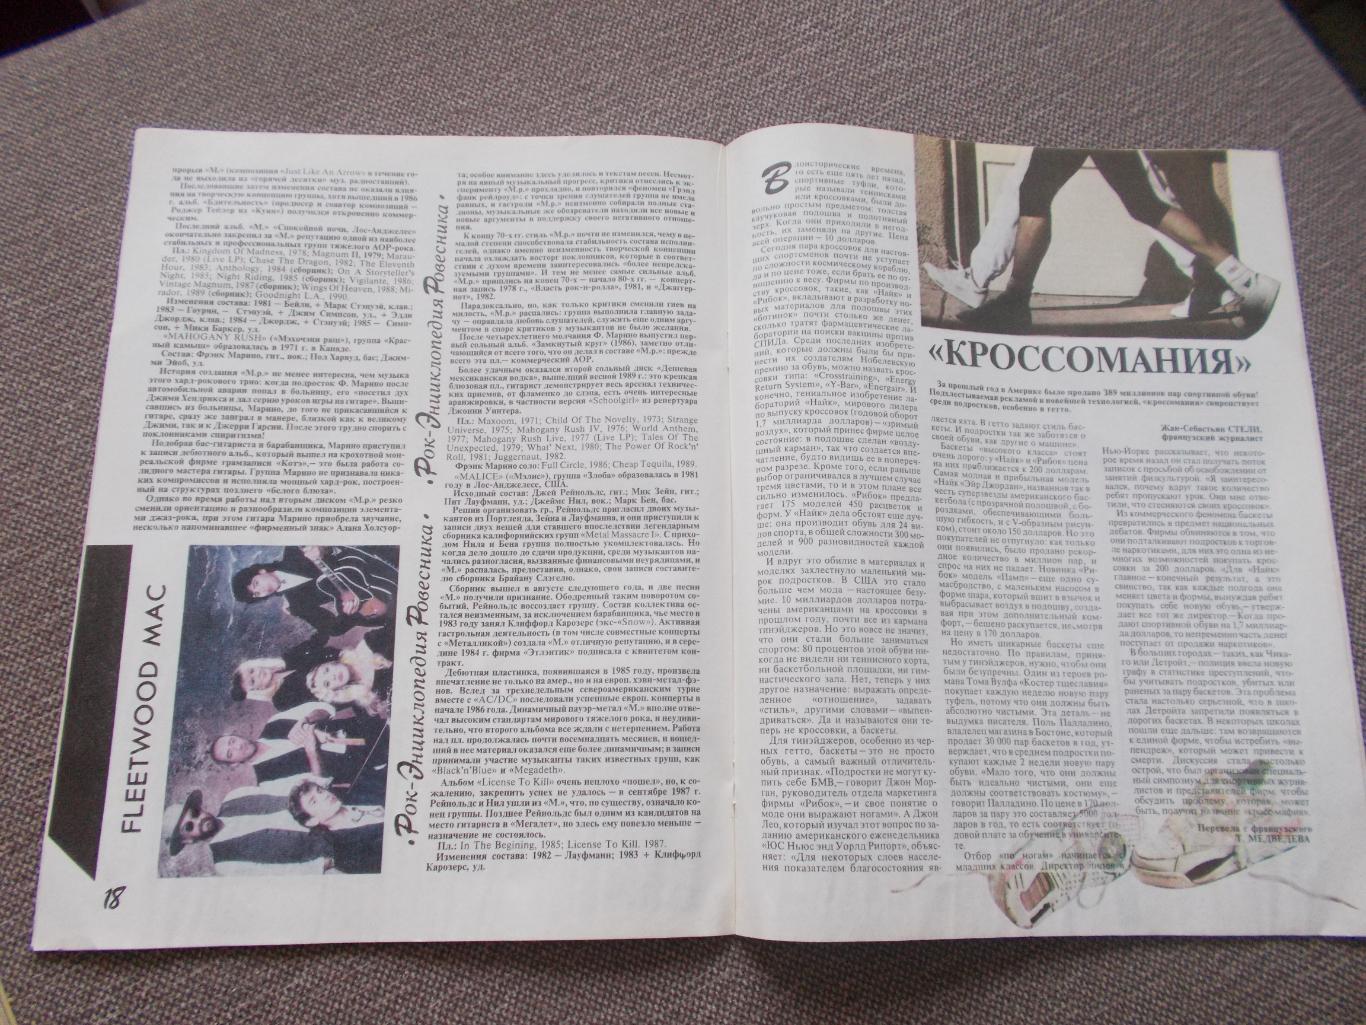 Журнал СССР :Ровесник№ 3 (март) 1991 г. (Молодежный музыкальный журнал) 6